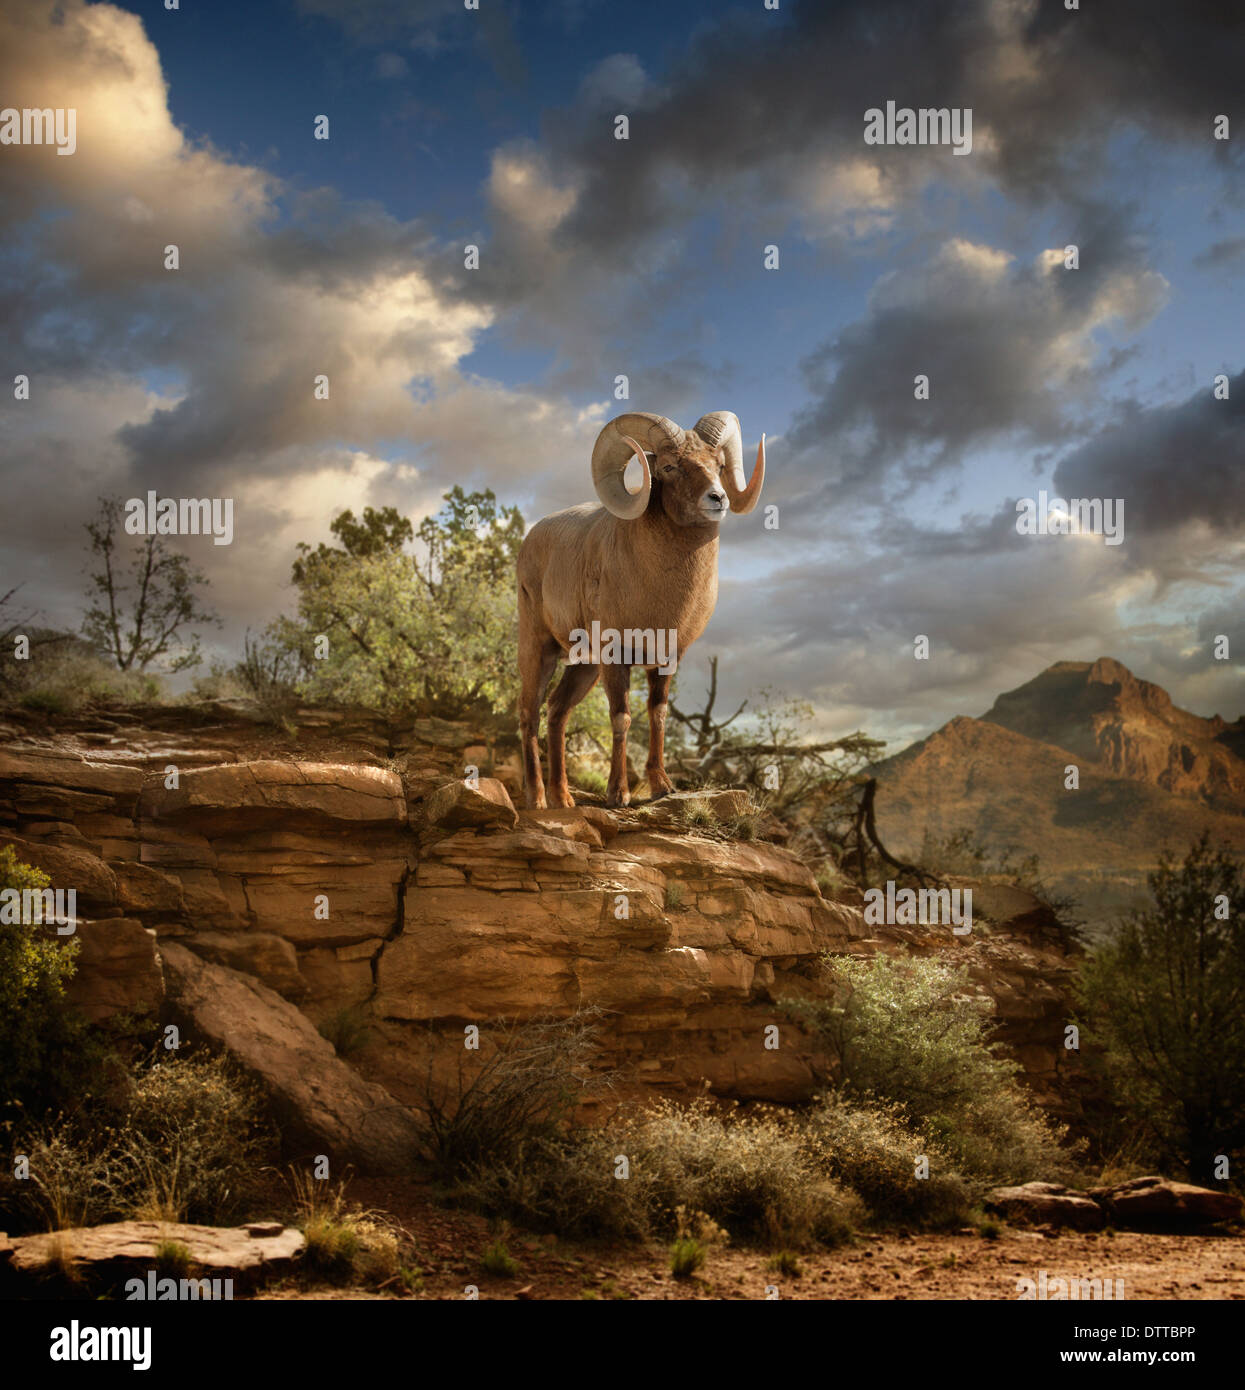 RAM auf Felsformation in Wüste Stockfoto